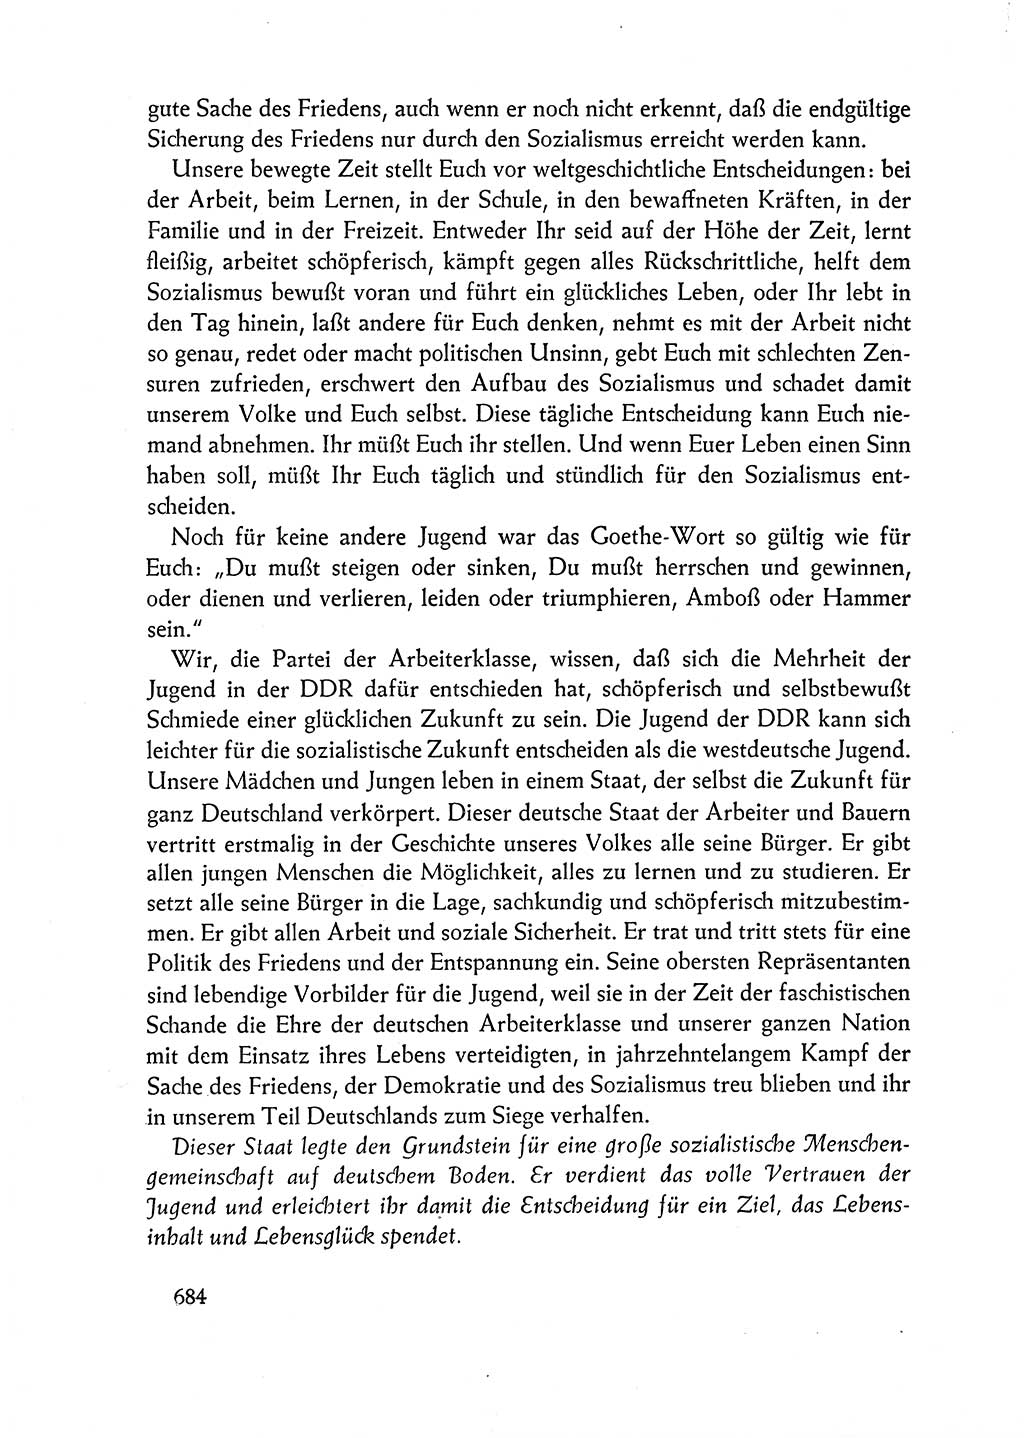 Dokumente der Sozialistischen Einheitspartei Deutschlands (SED) [Deutsche Demokratische Republik (DDR)] 1962-1963, Seite 684 (Dok. SED DDR 1962-1963, S. 684)